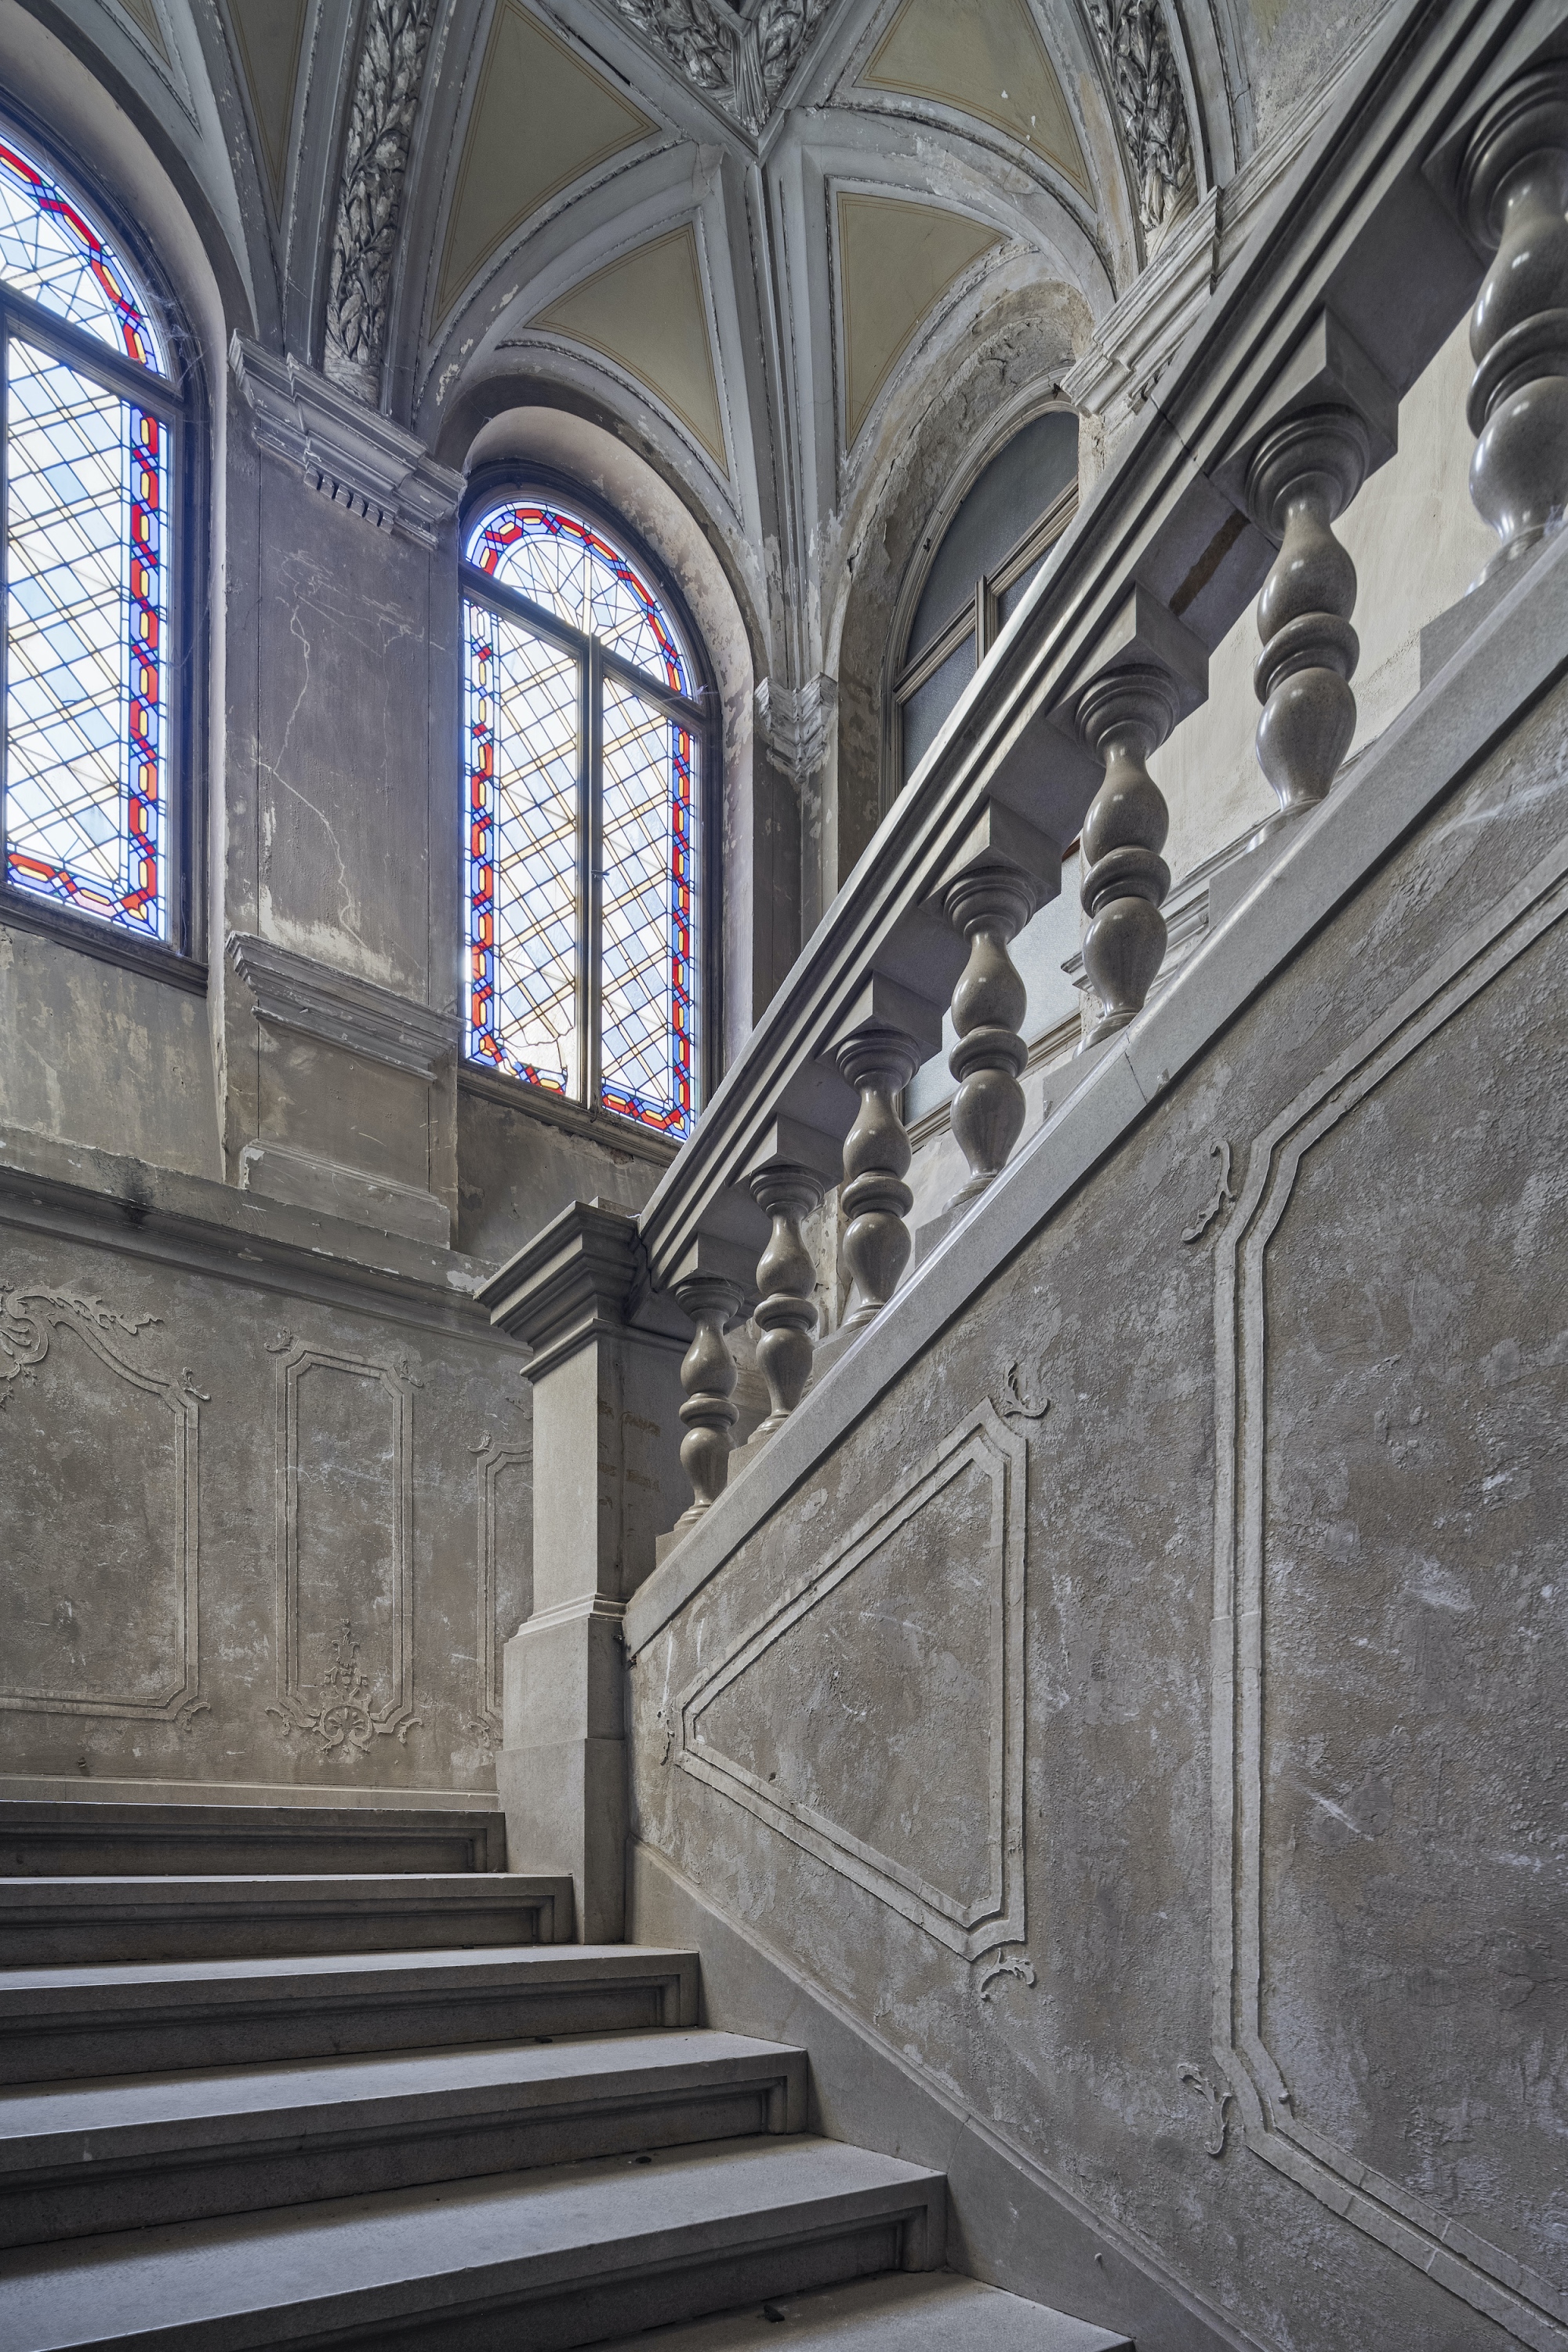 A lépcsőház ornamentikái és színezett ablakai is lényegében épségben élték túl a viszontagságos évszázadot